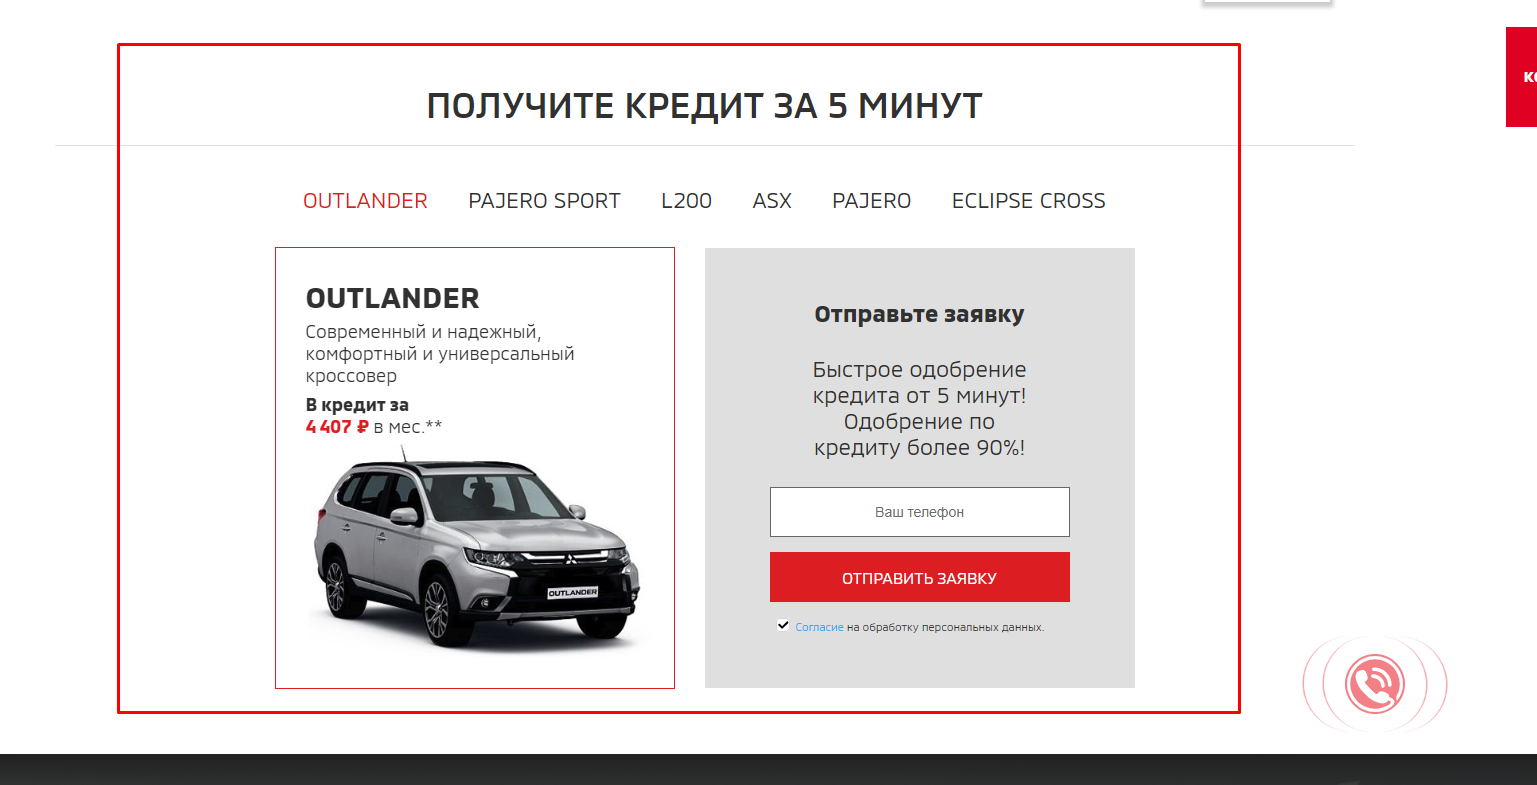 Запуск контекстной рекламы в Яндекс.Директе и Google Ads для автодилера Mitsubishi «Арконт» - рекомендации по сайту, кредит